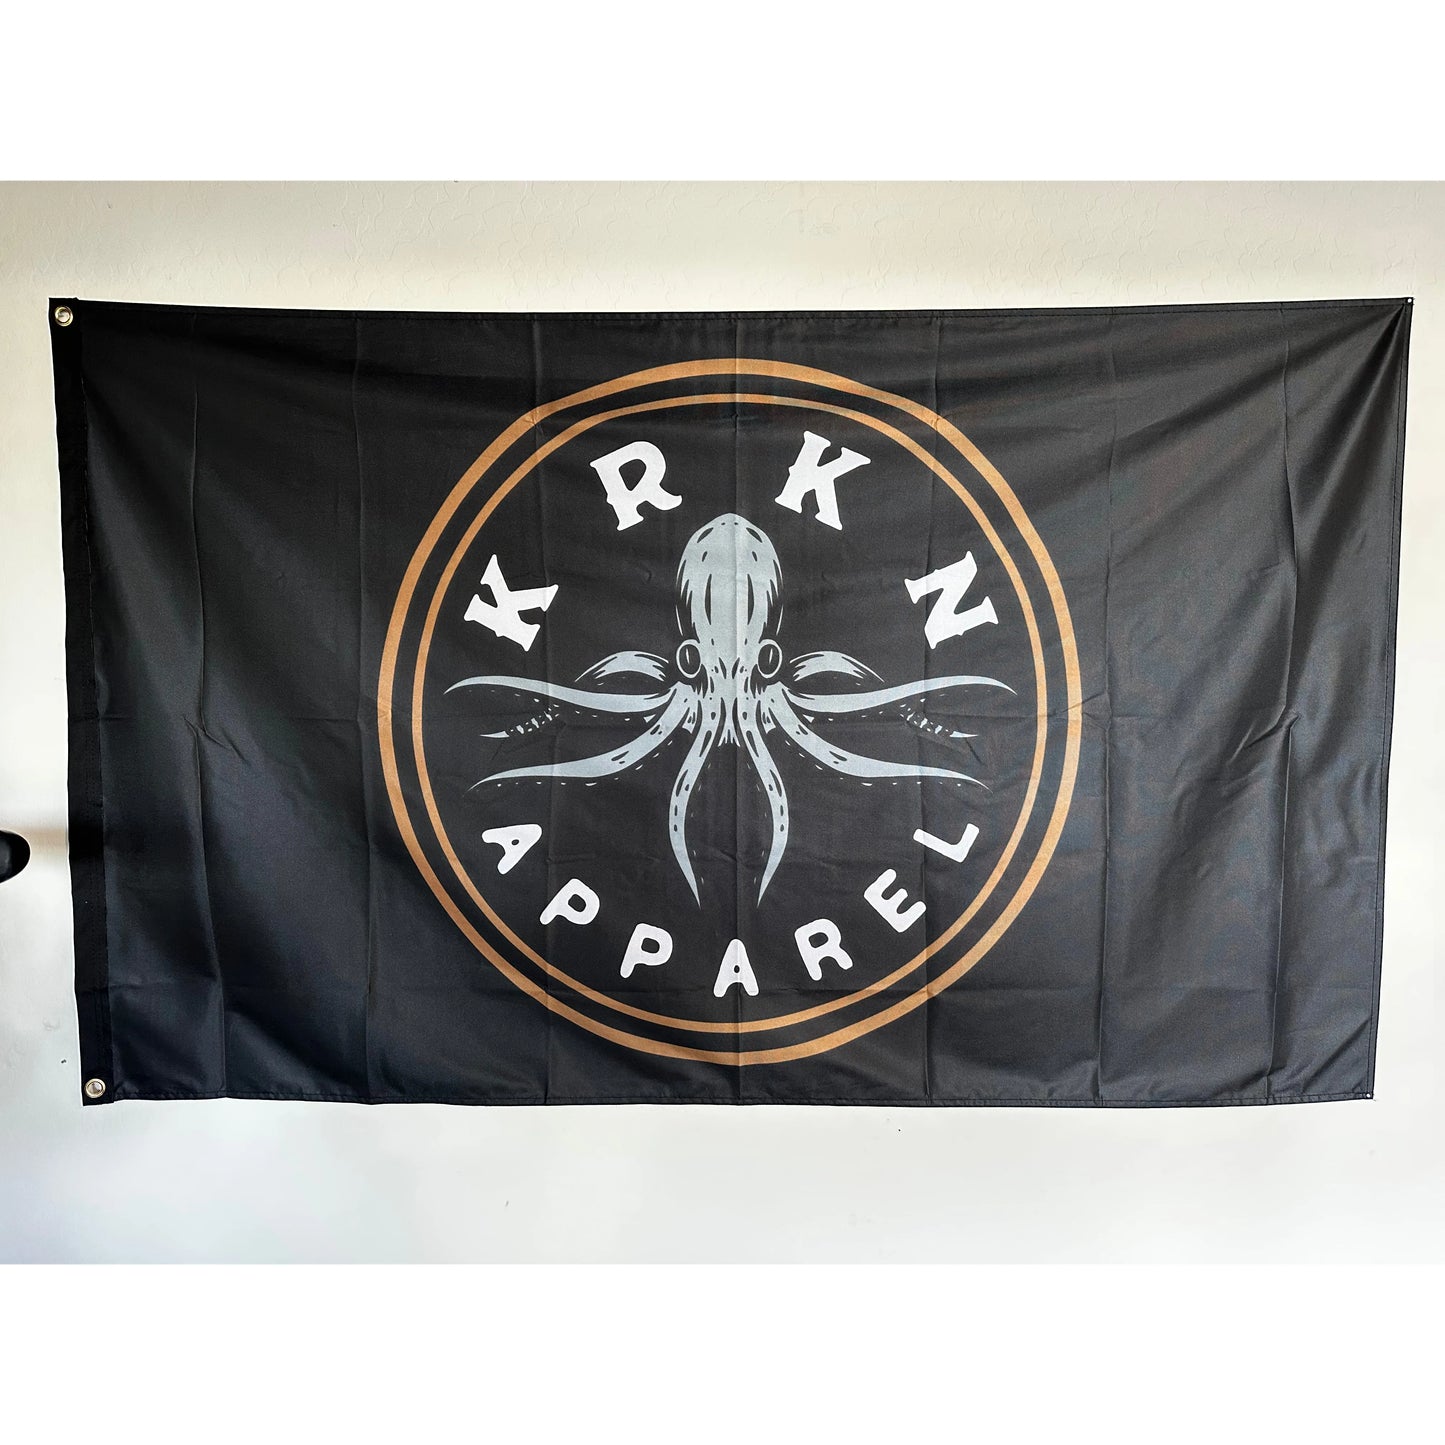 Krkn Flag